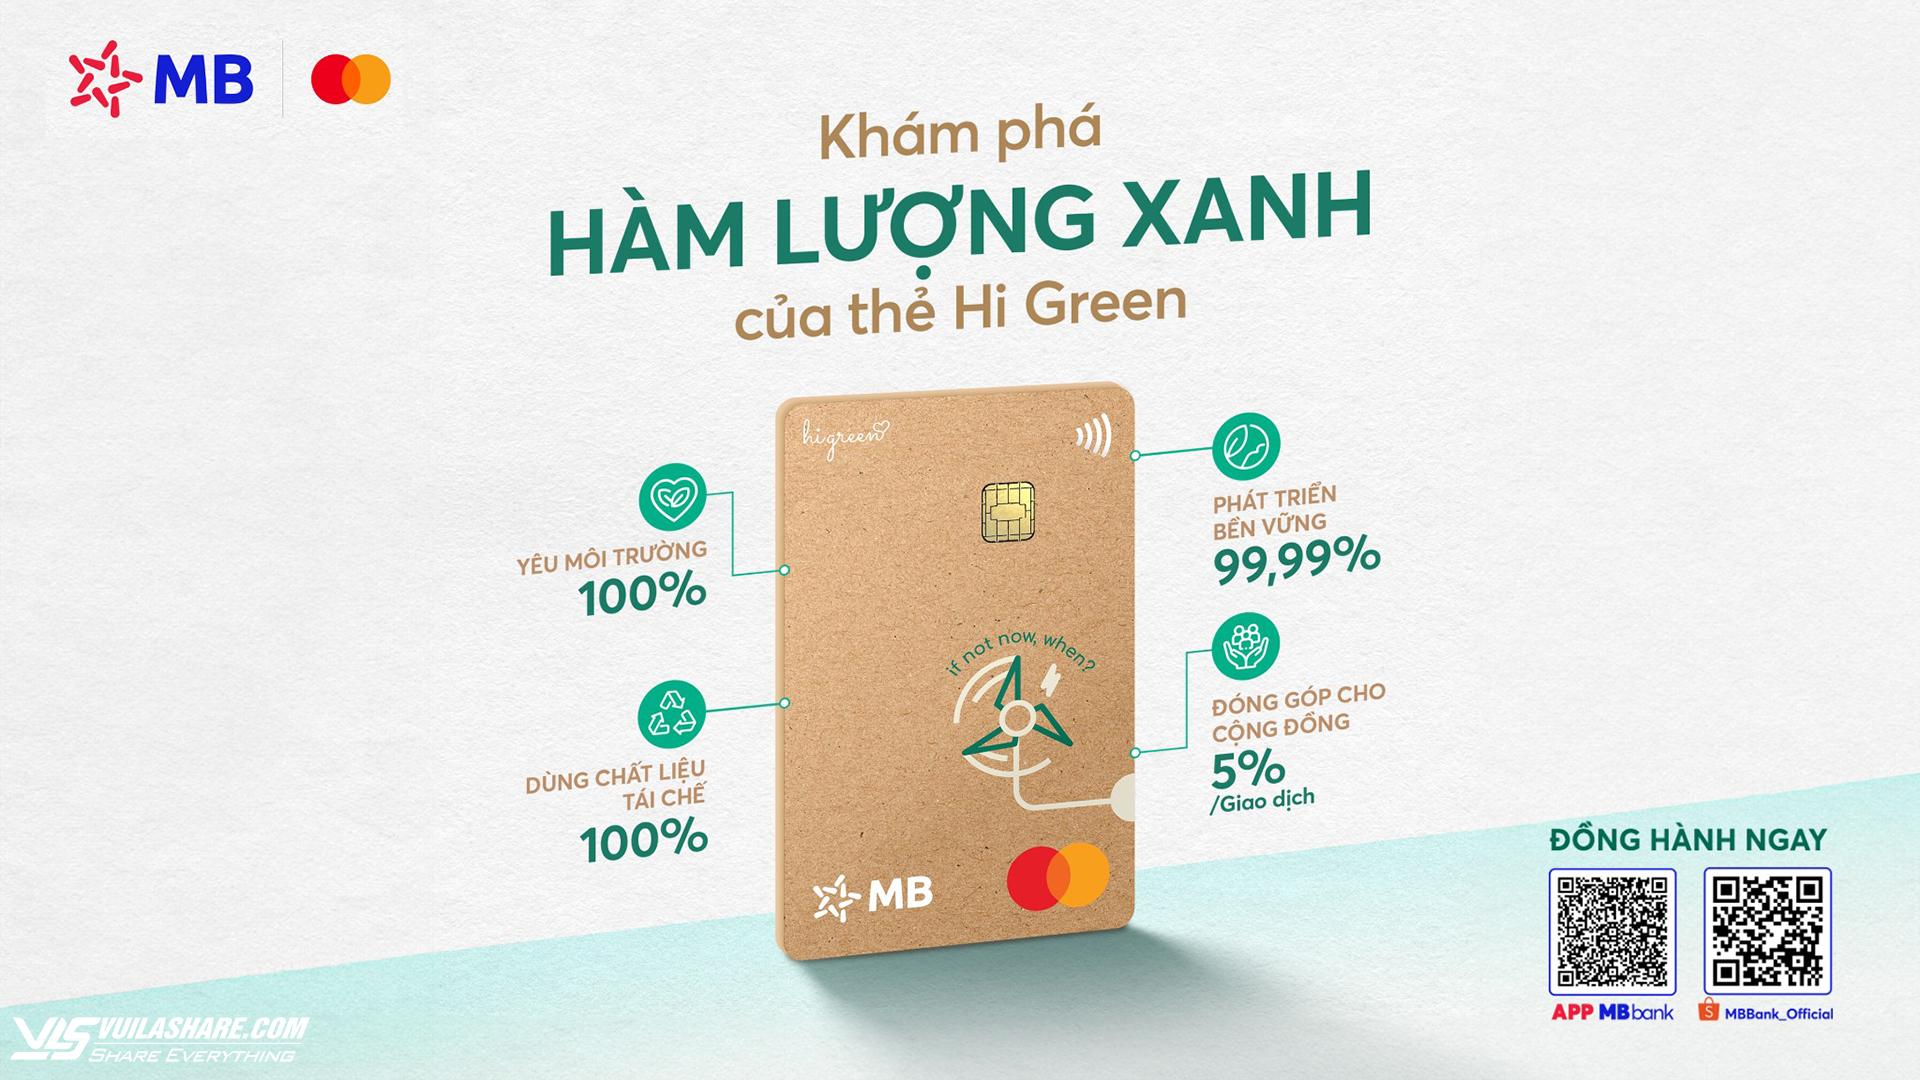 Với mỗi giao dịch bằng thẻ Hi Green, MB sẽ đối ứng tương đương 5% doanh số chi tiêu vào các dự án môi trường và xã hội